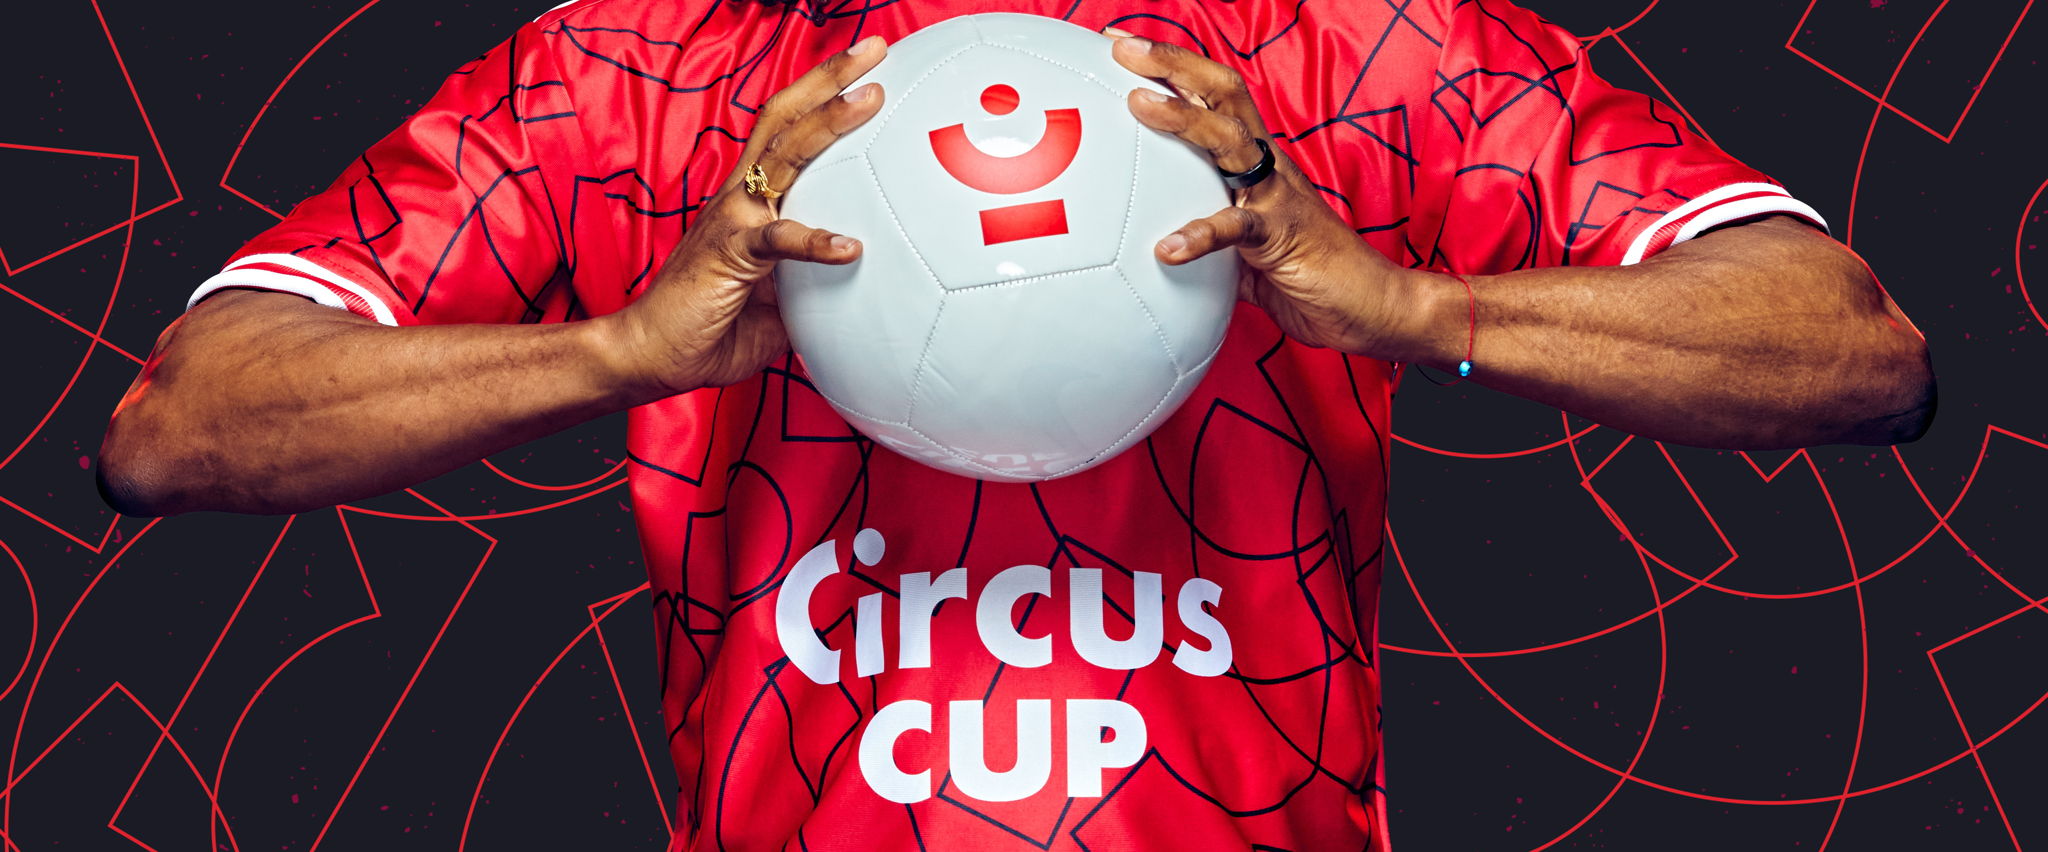 Marouane Fellaini keert terug naar Sclessin voor Circus Cup